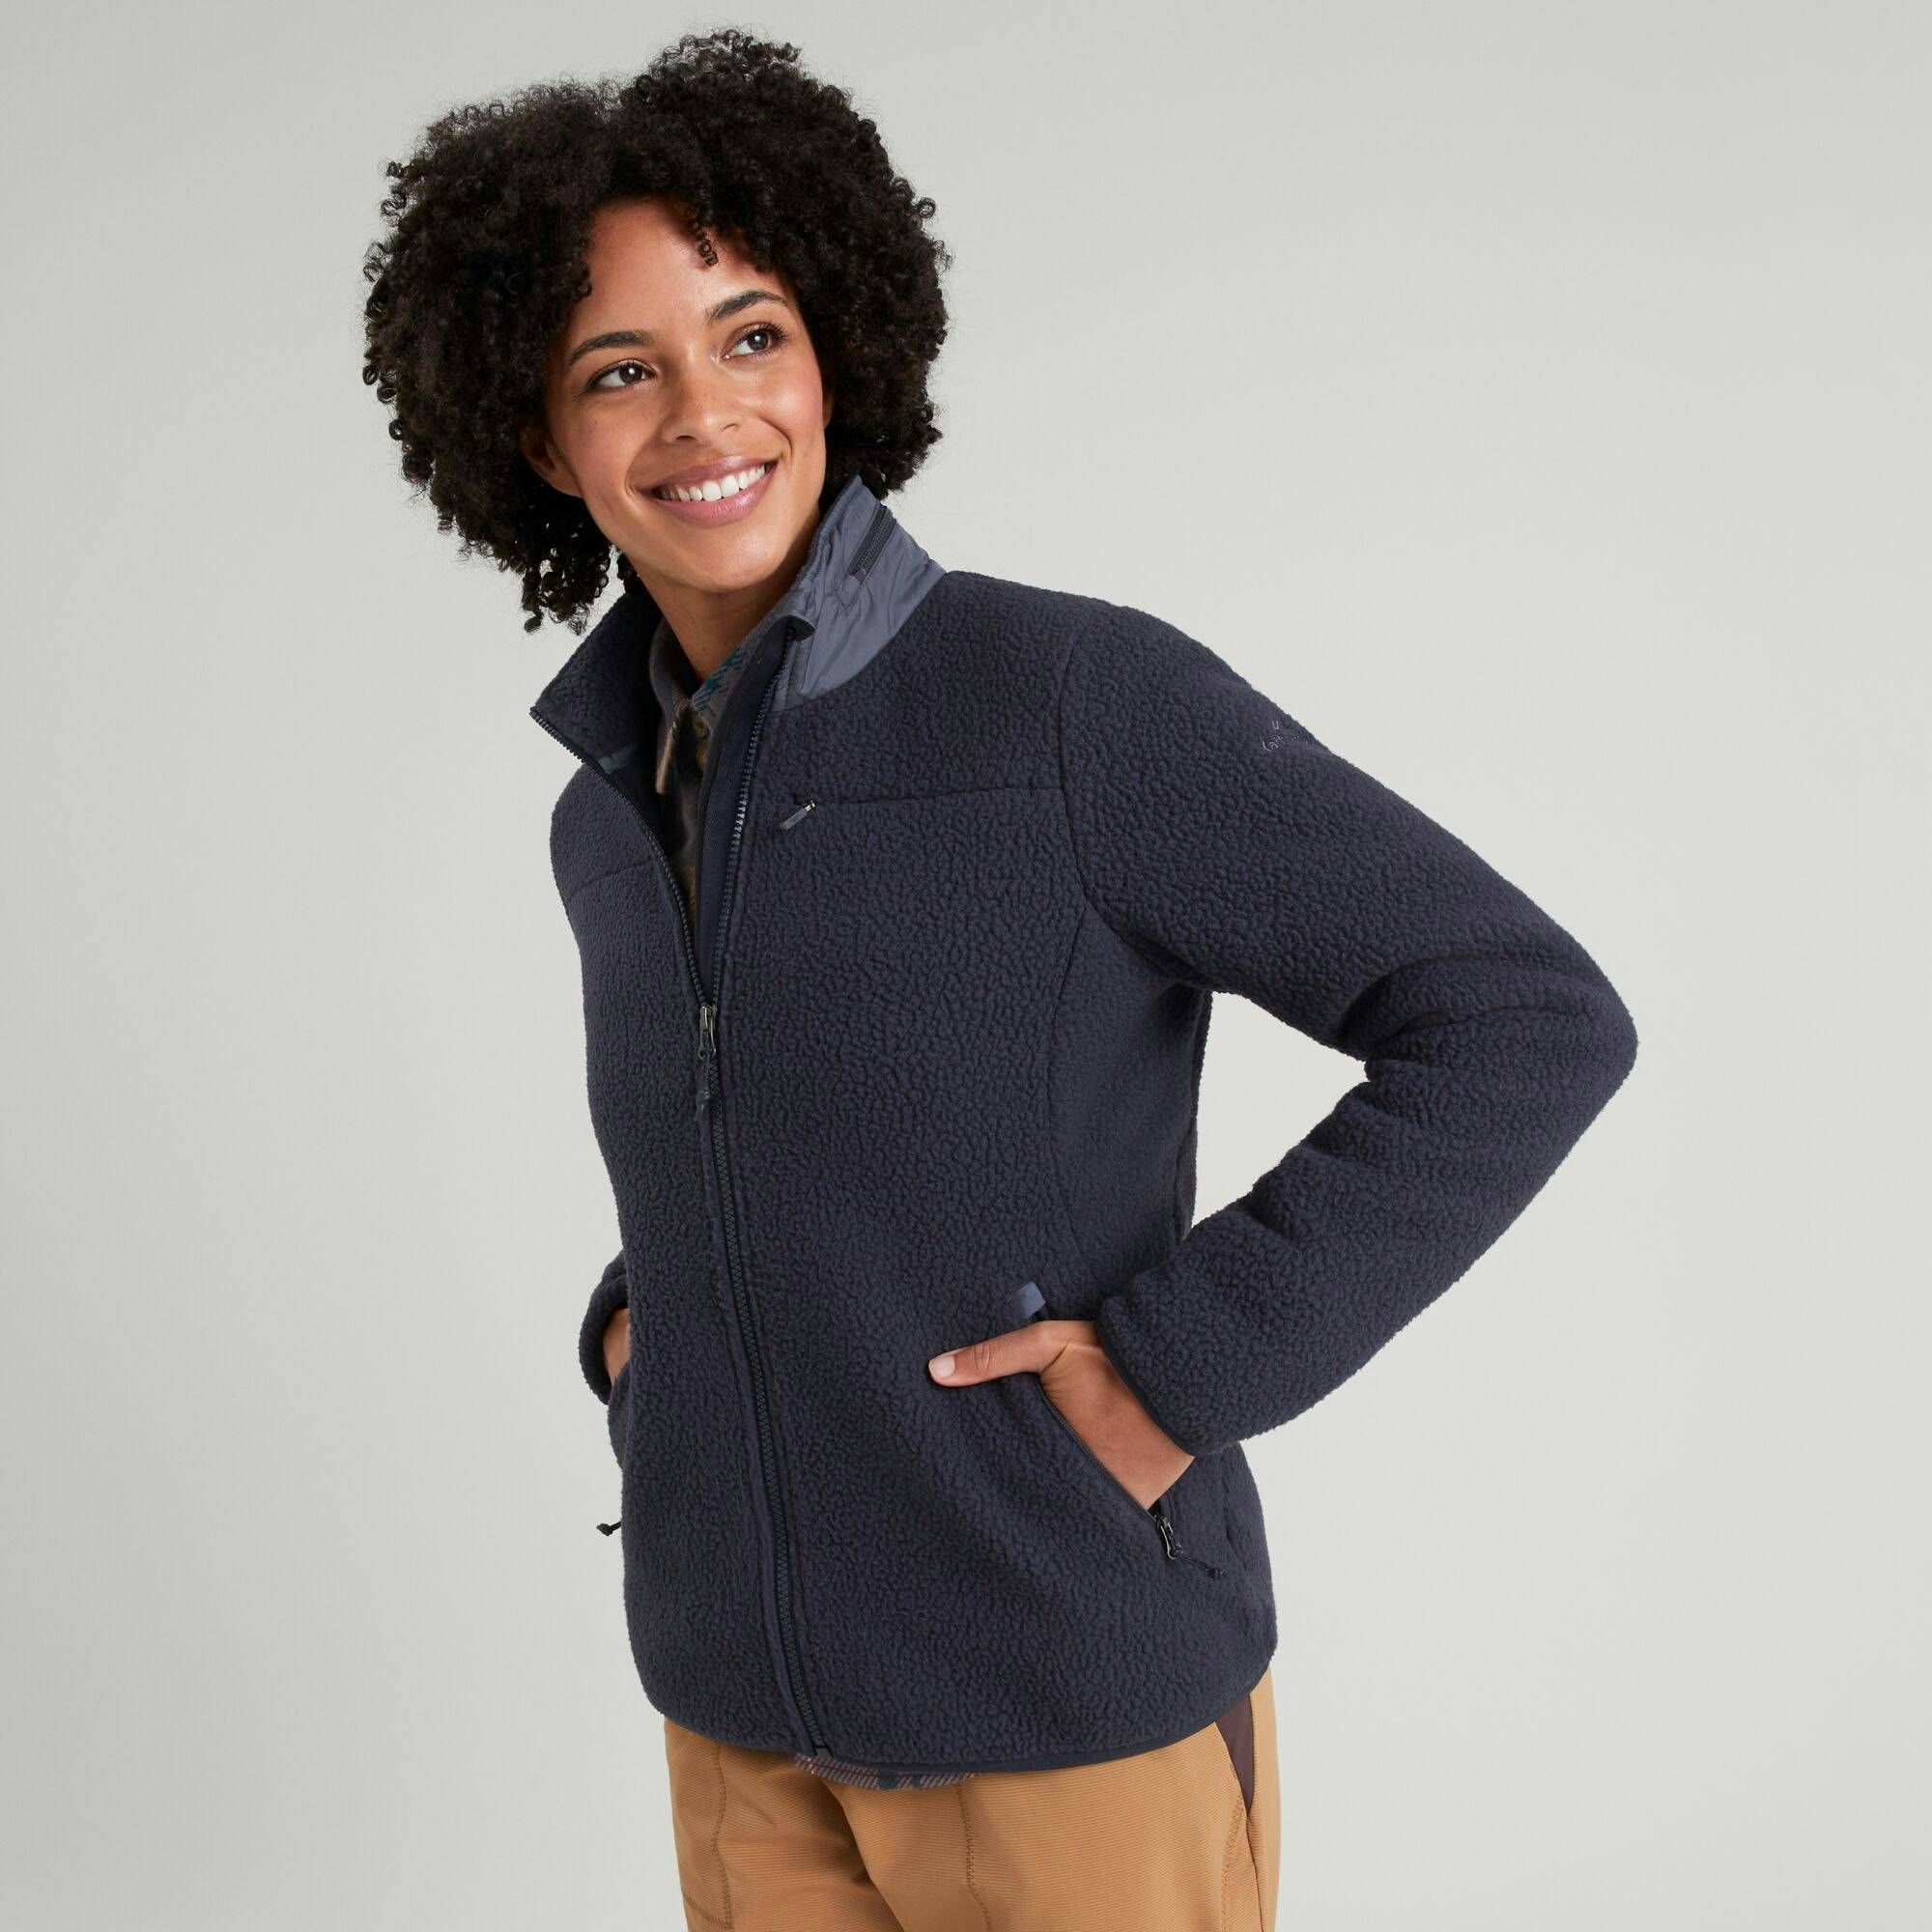 Women's Fleece Jackets & Fleece Vests